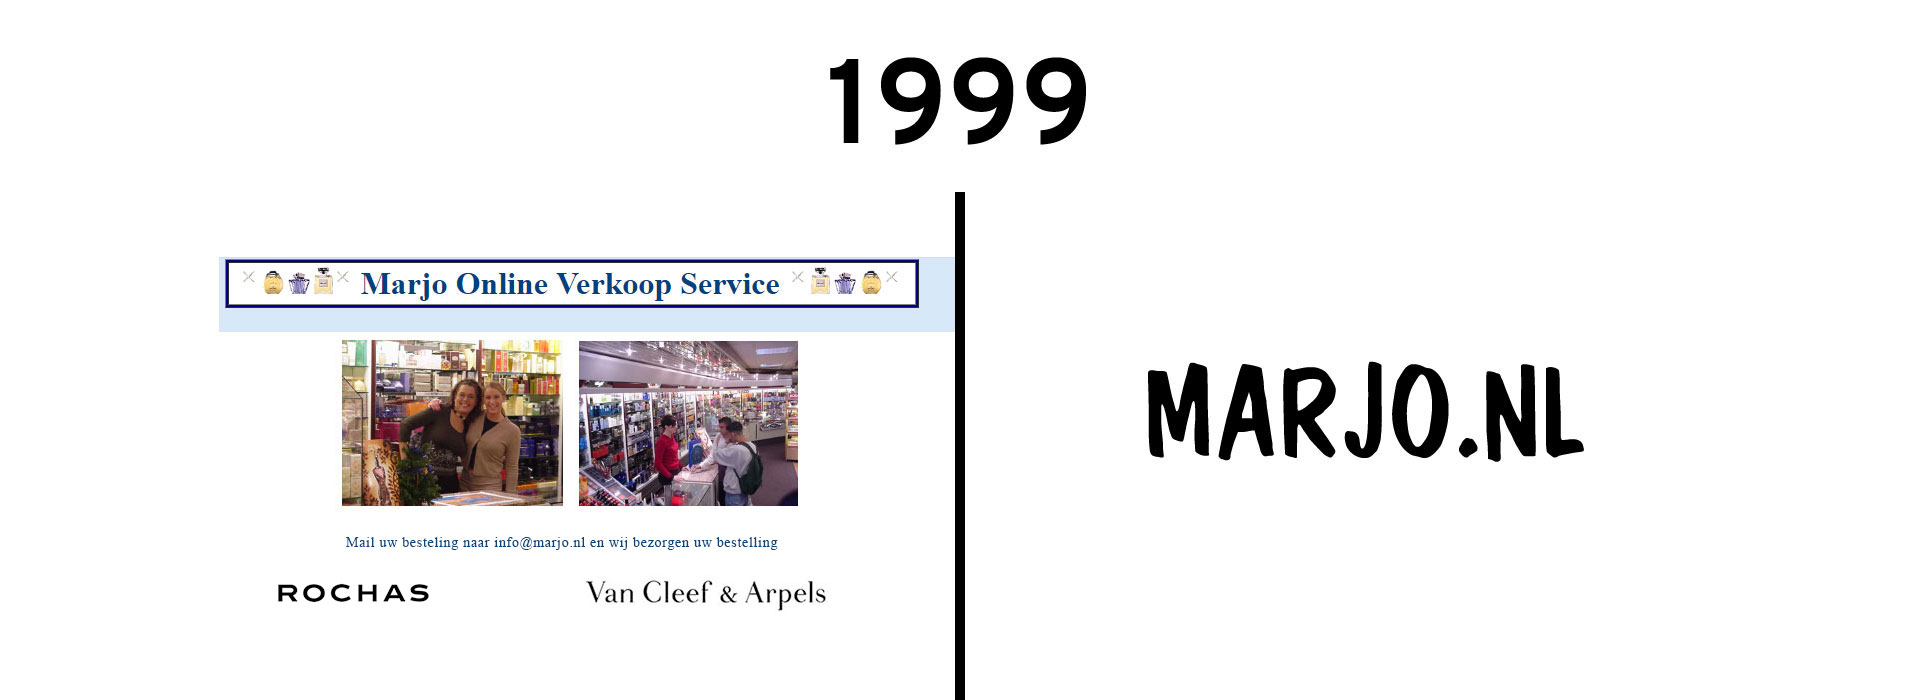 1999 Het jaar waarin het allemaal begon met MARJO